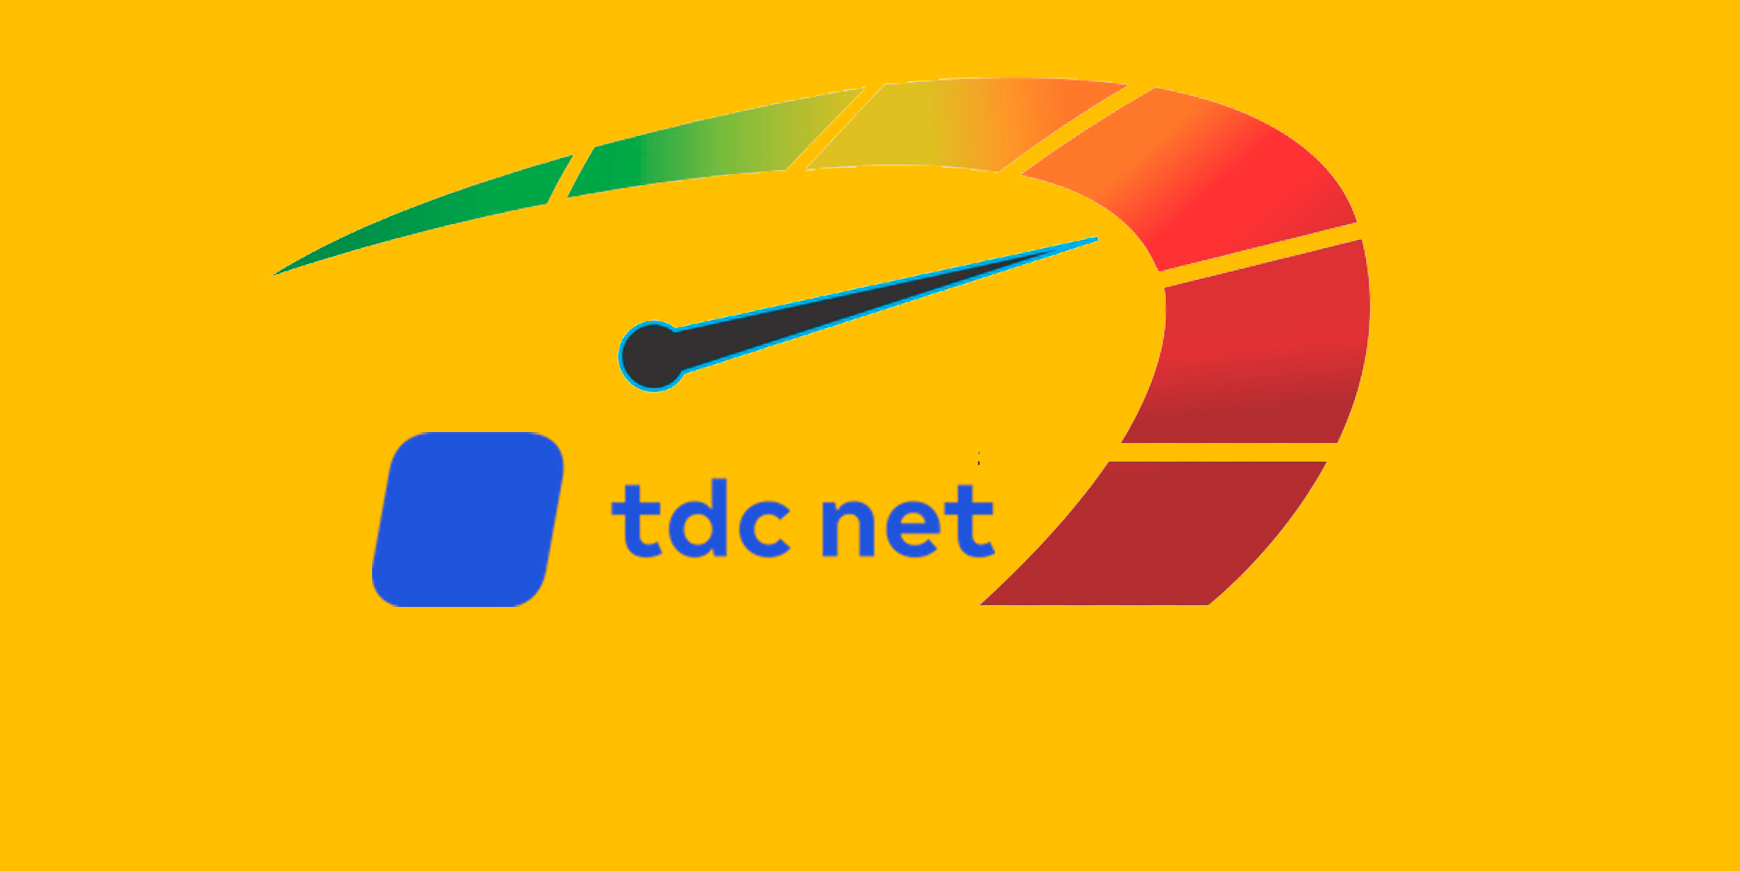 TDC Net